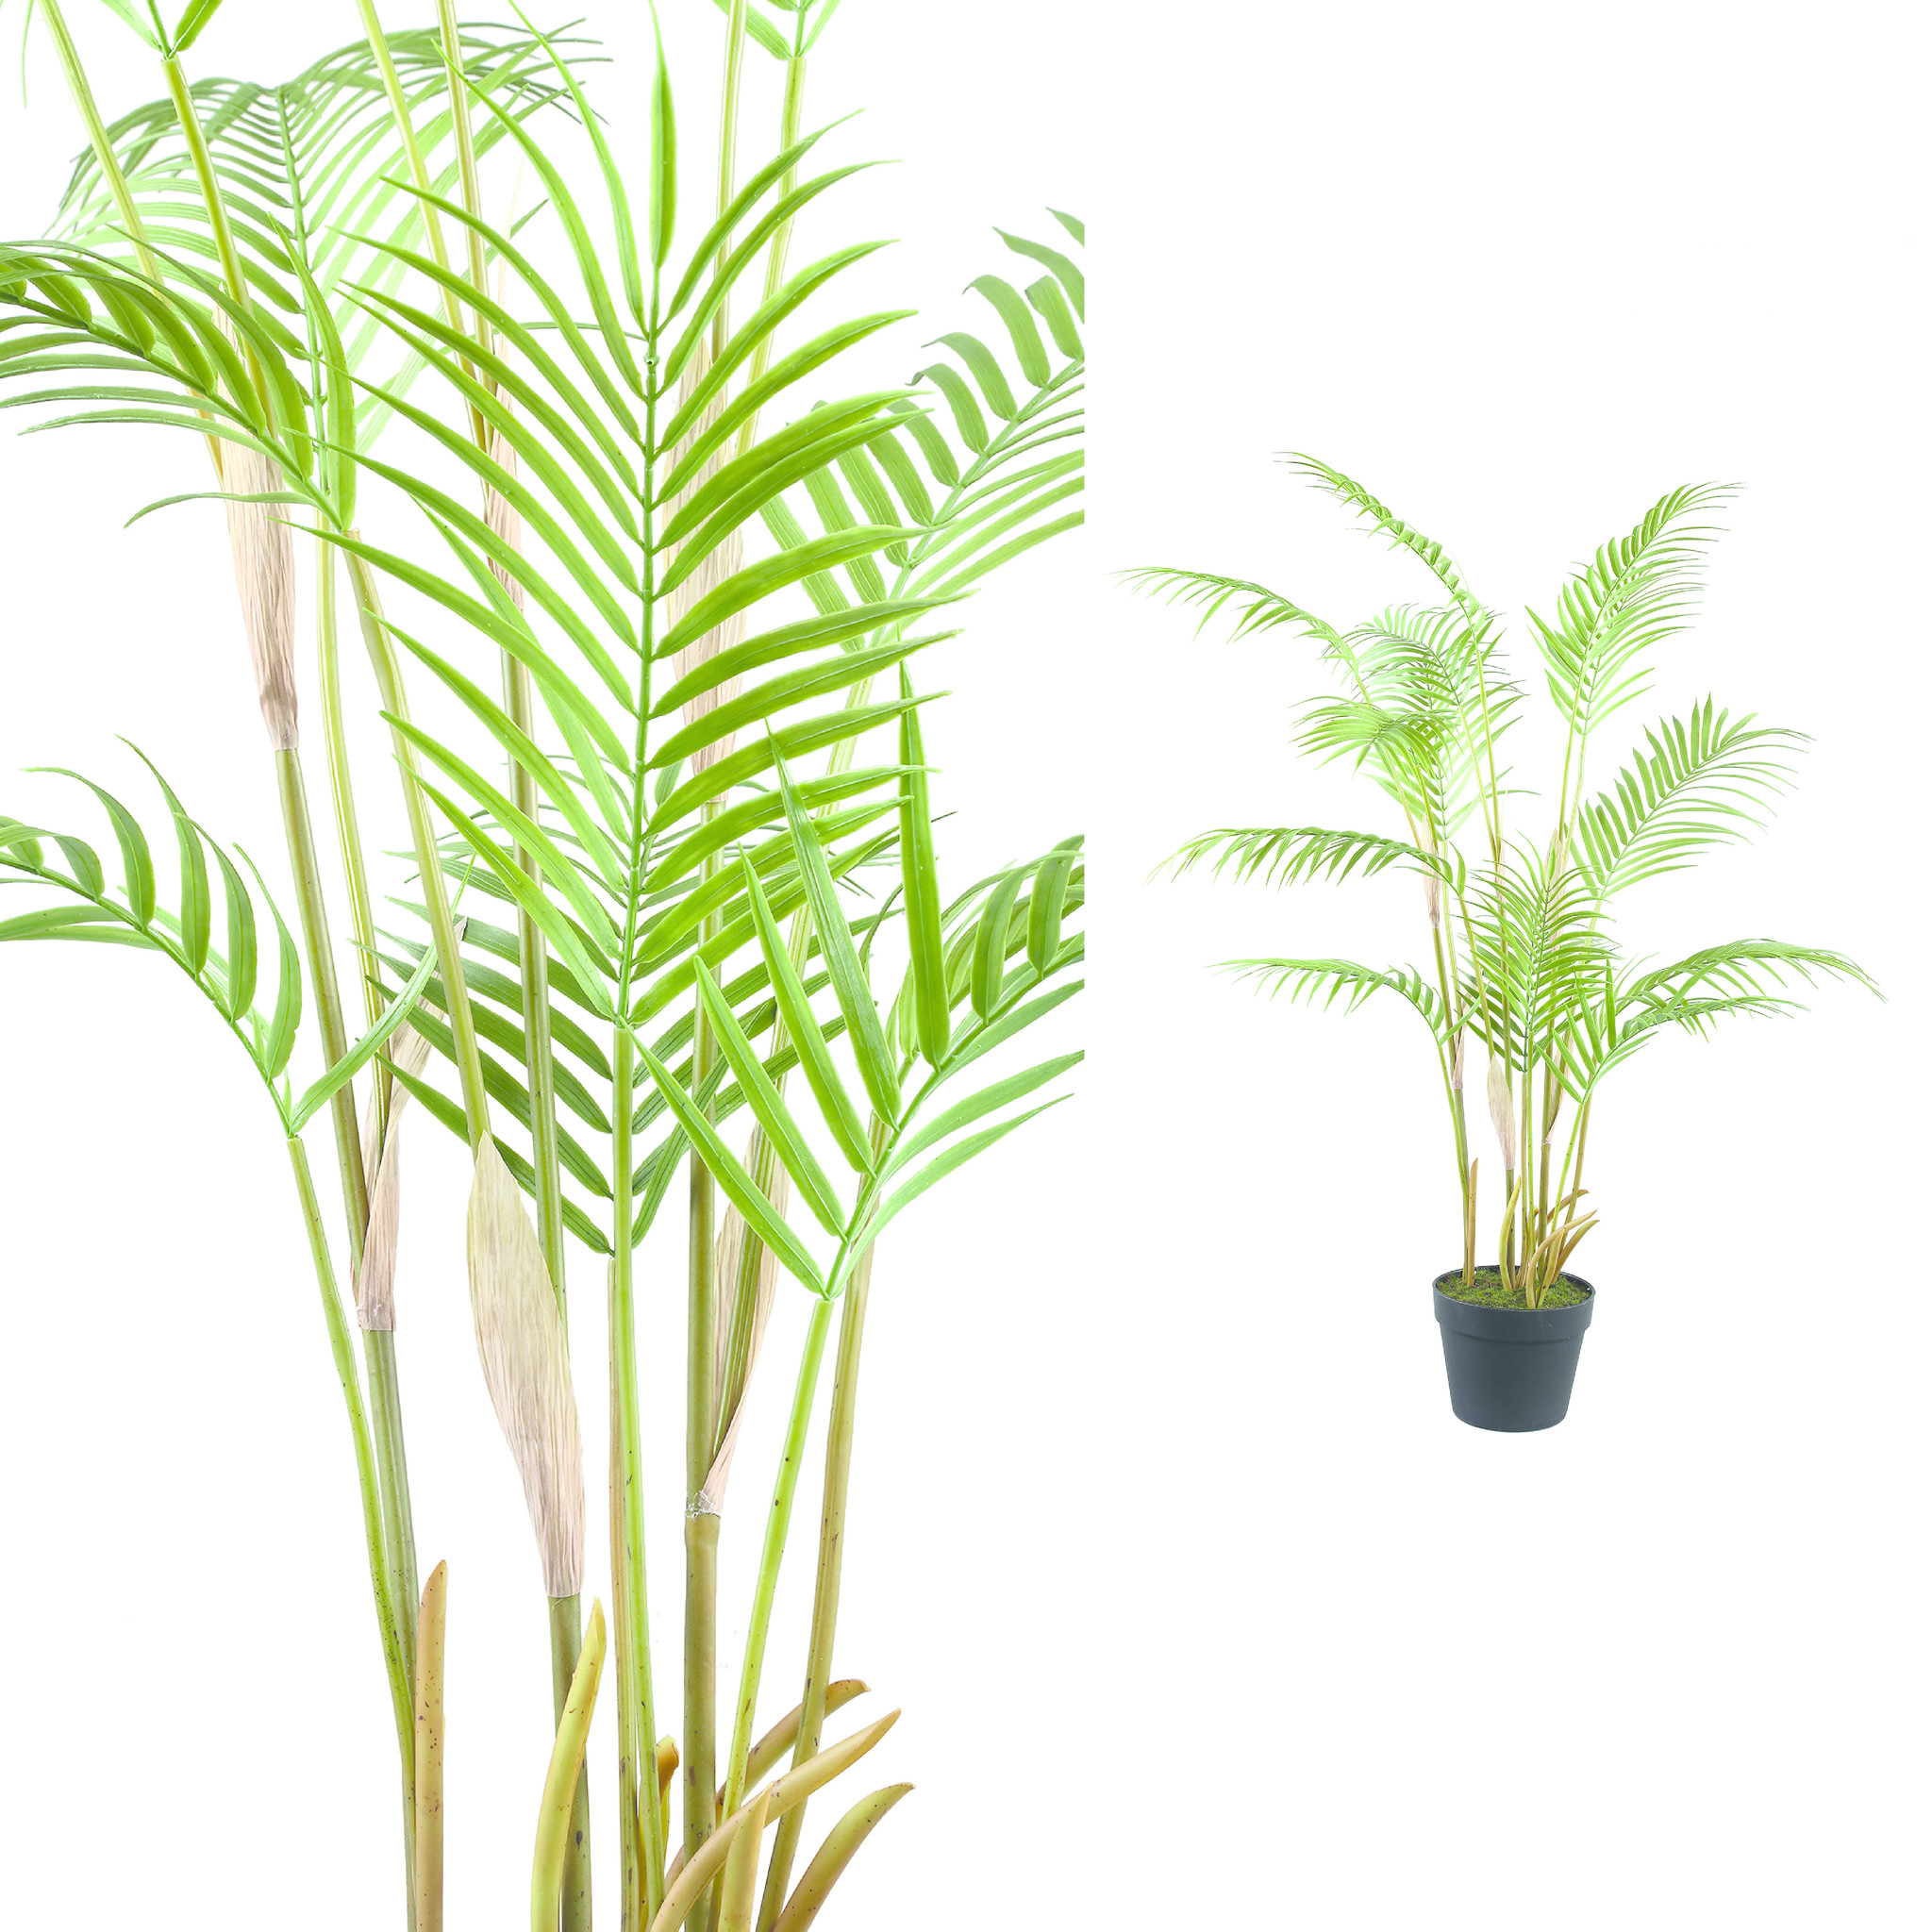 Beschrijven oppervlakkig ondanks Palmboom groen in zwarte plastic pot - Gratis thuisbezorgd - De Woon Winkel